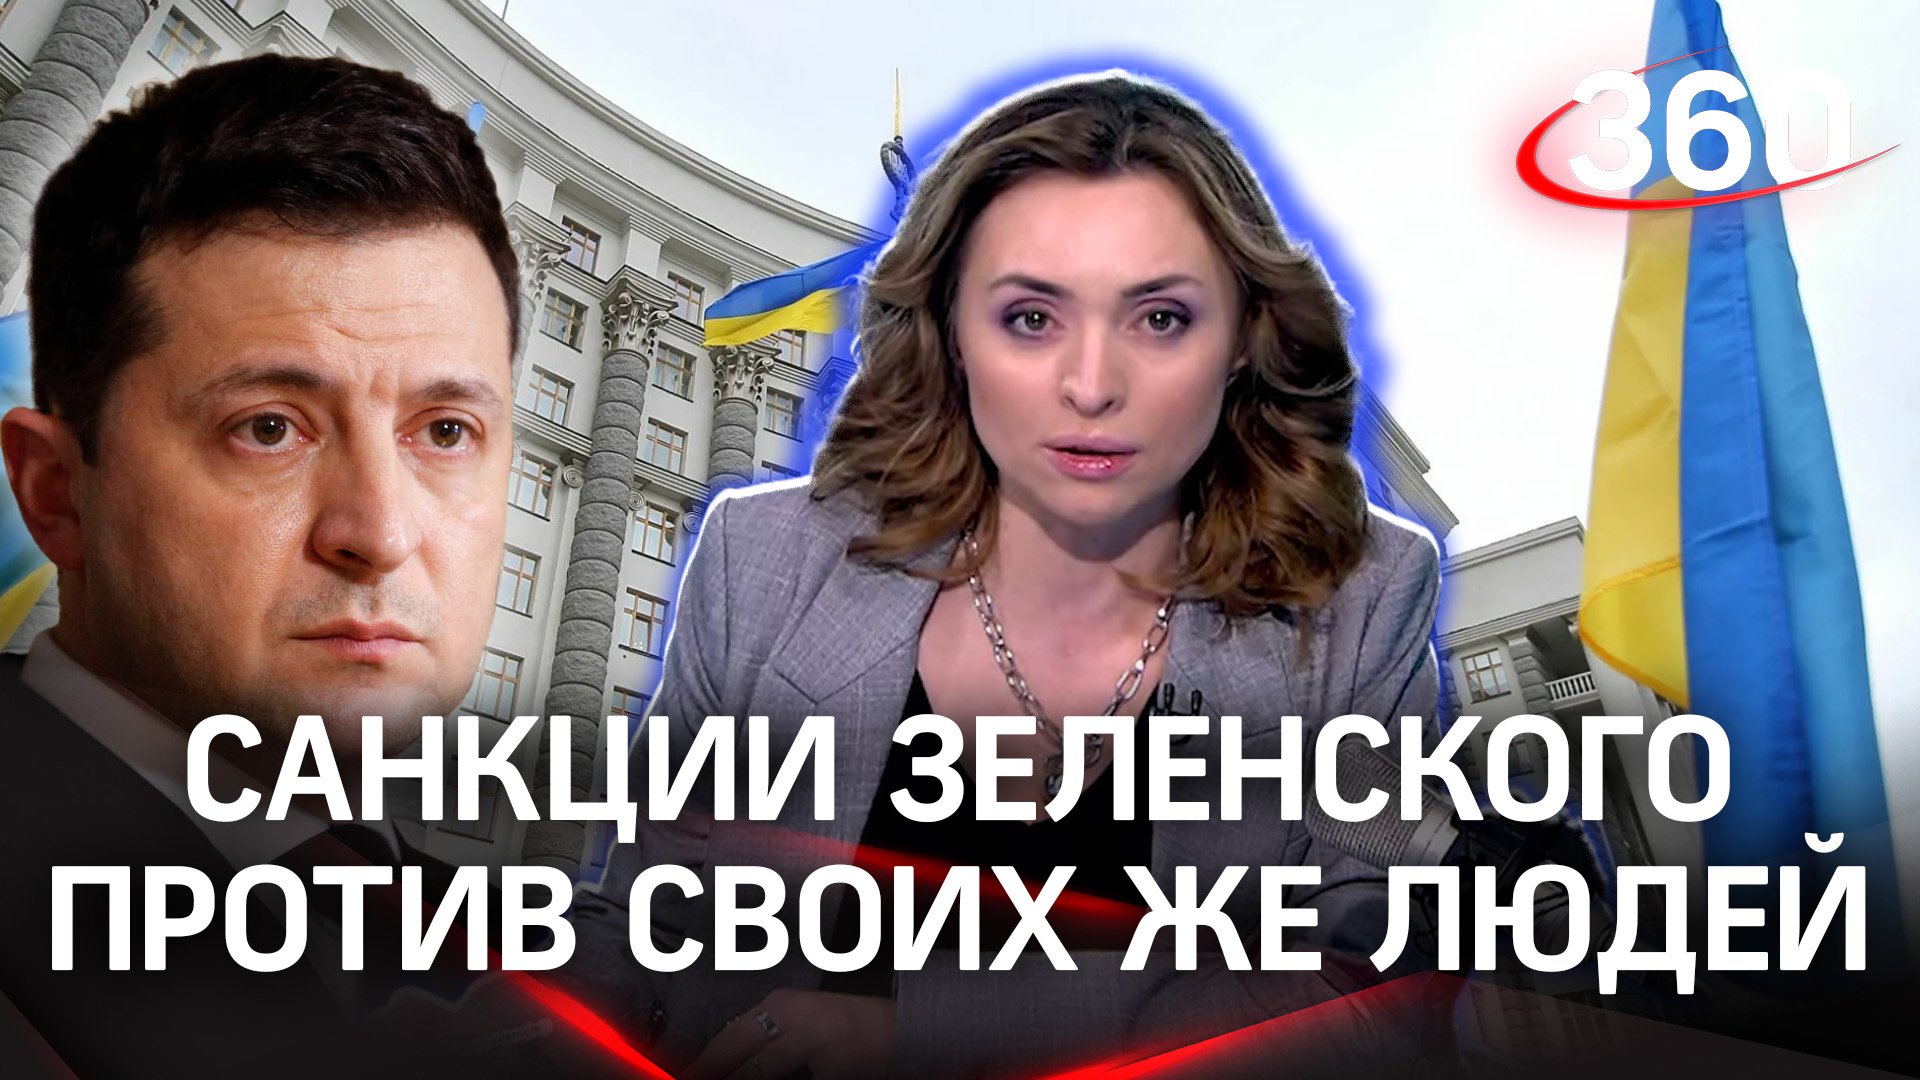 Изменения в украинском правительстве: санкции против своих же | Екатерина Малашенко